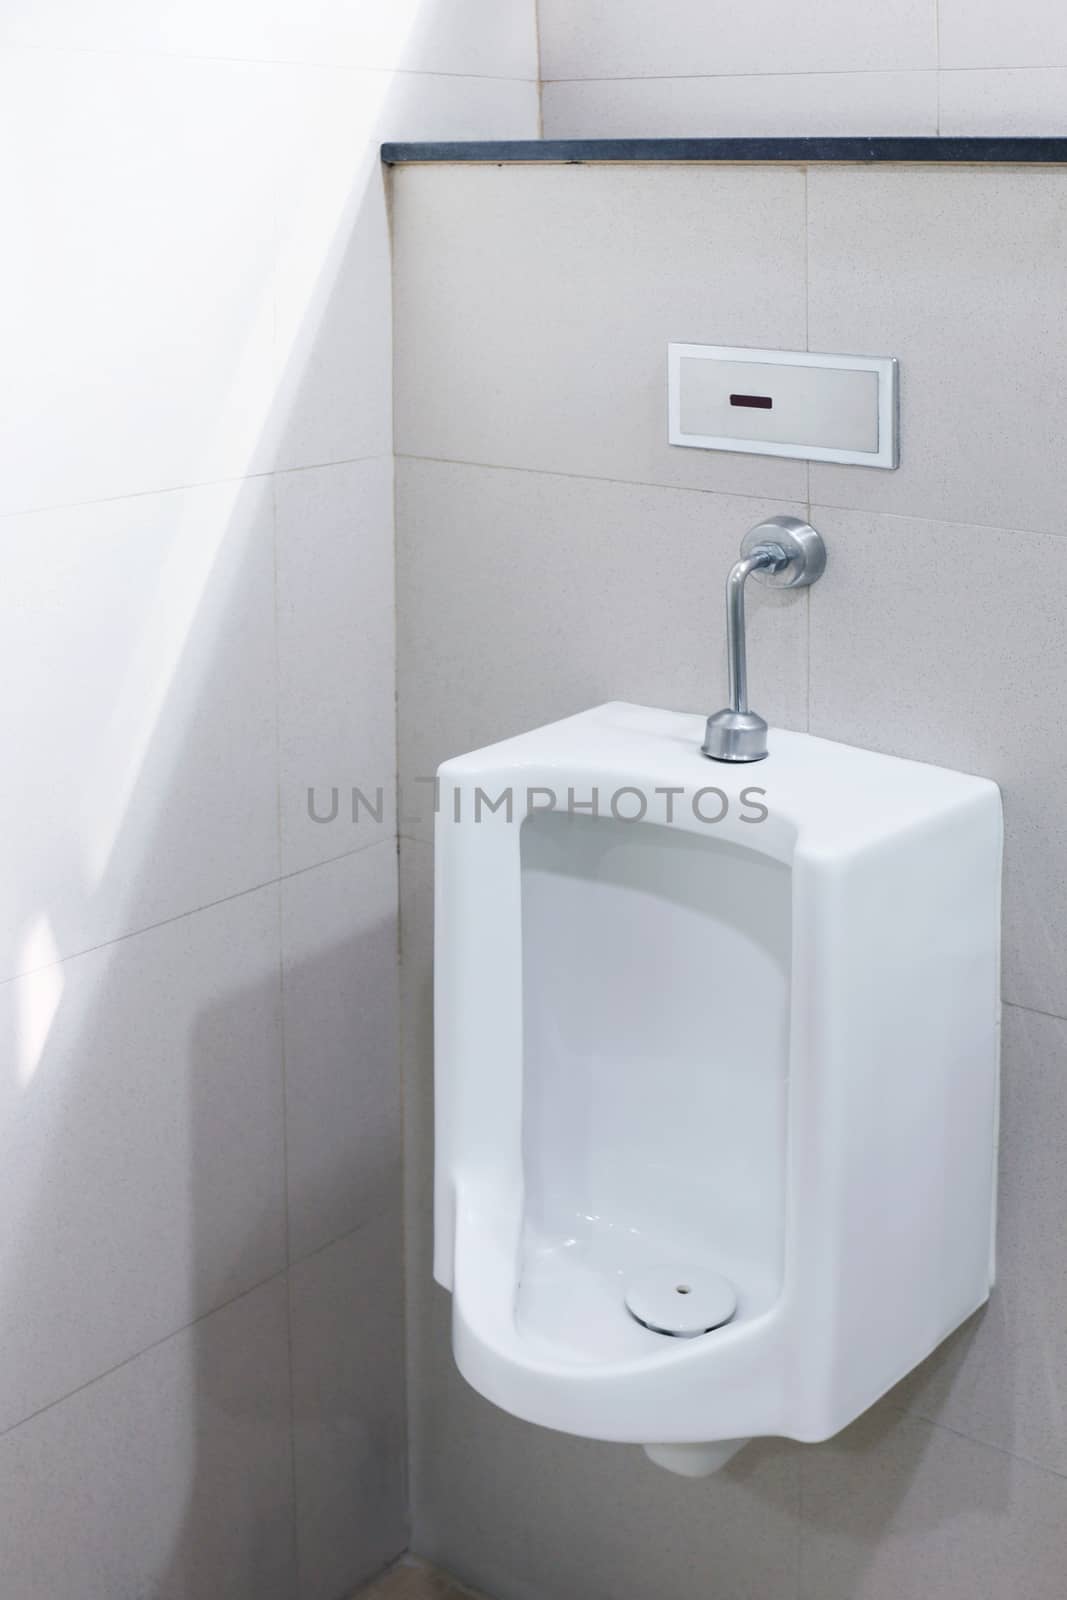 Urinals for men outdoor toilet, Urinals white ceramic at bathroom public, close-up white urinals